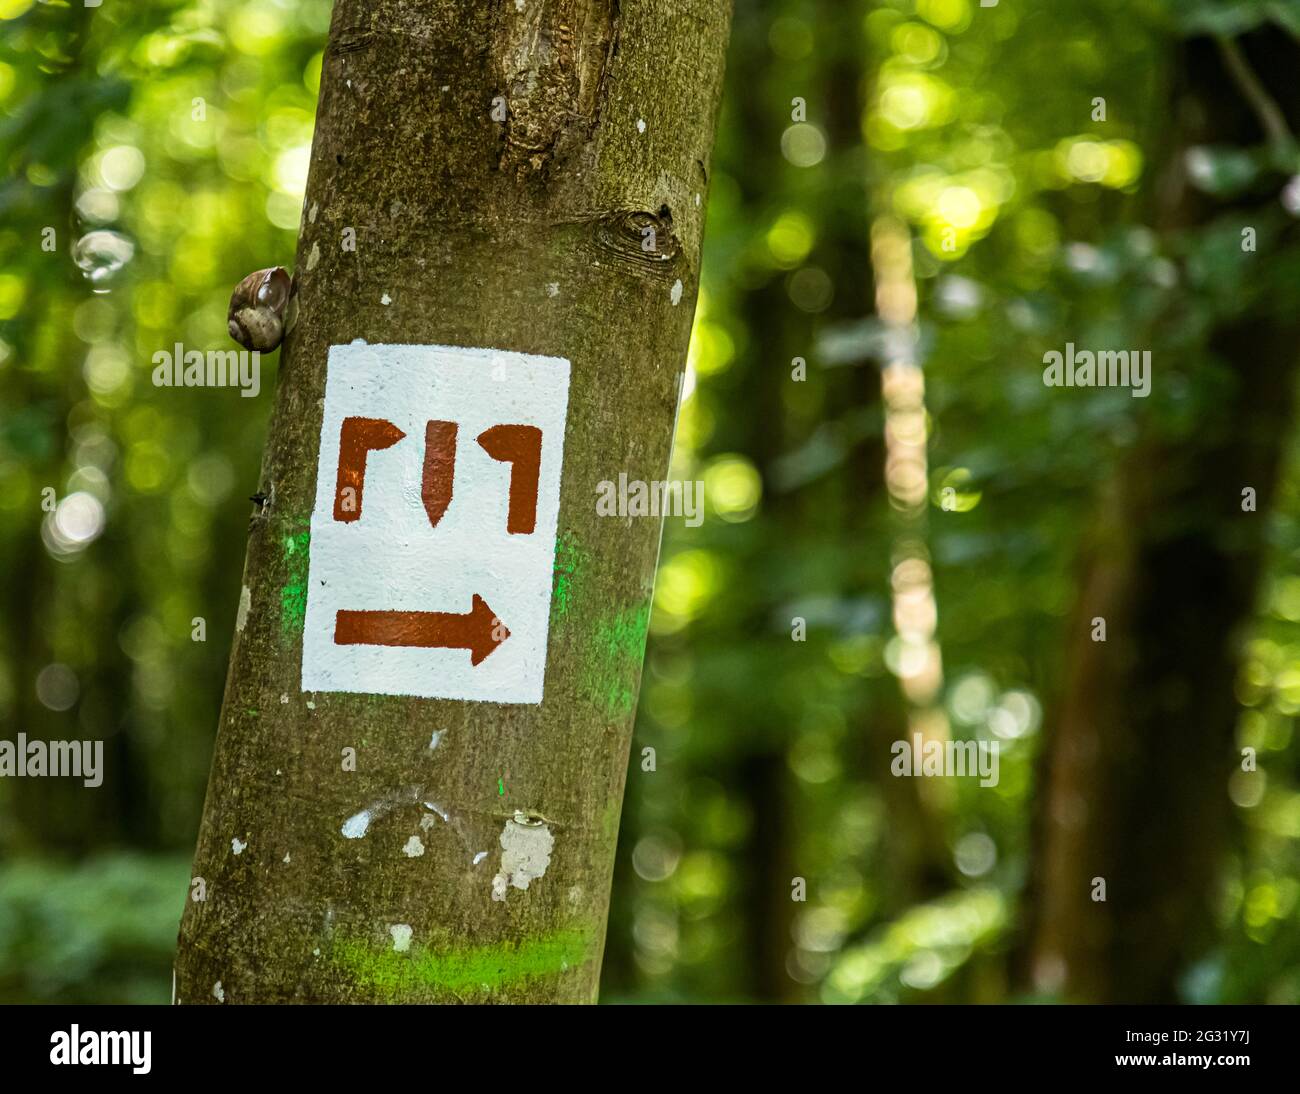 Caracol concha y un extraño signo de senderismo en un tronco de árbol cerca de Esch-sur-Alzette, Luxemburgo Foto de stock